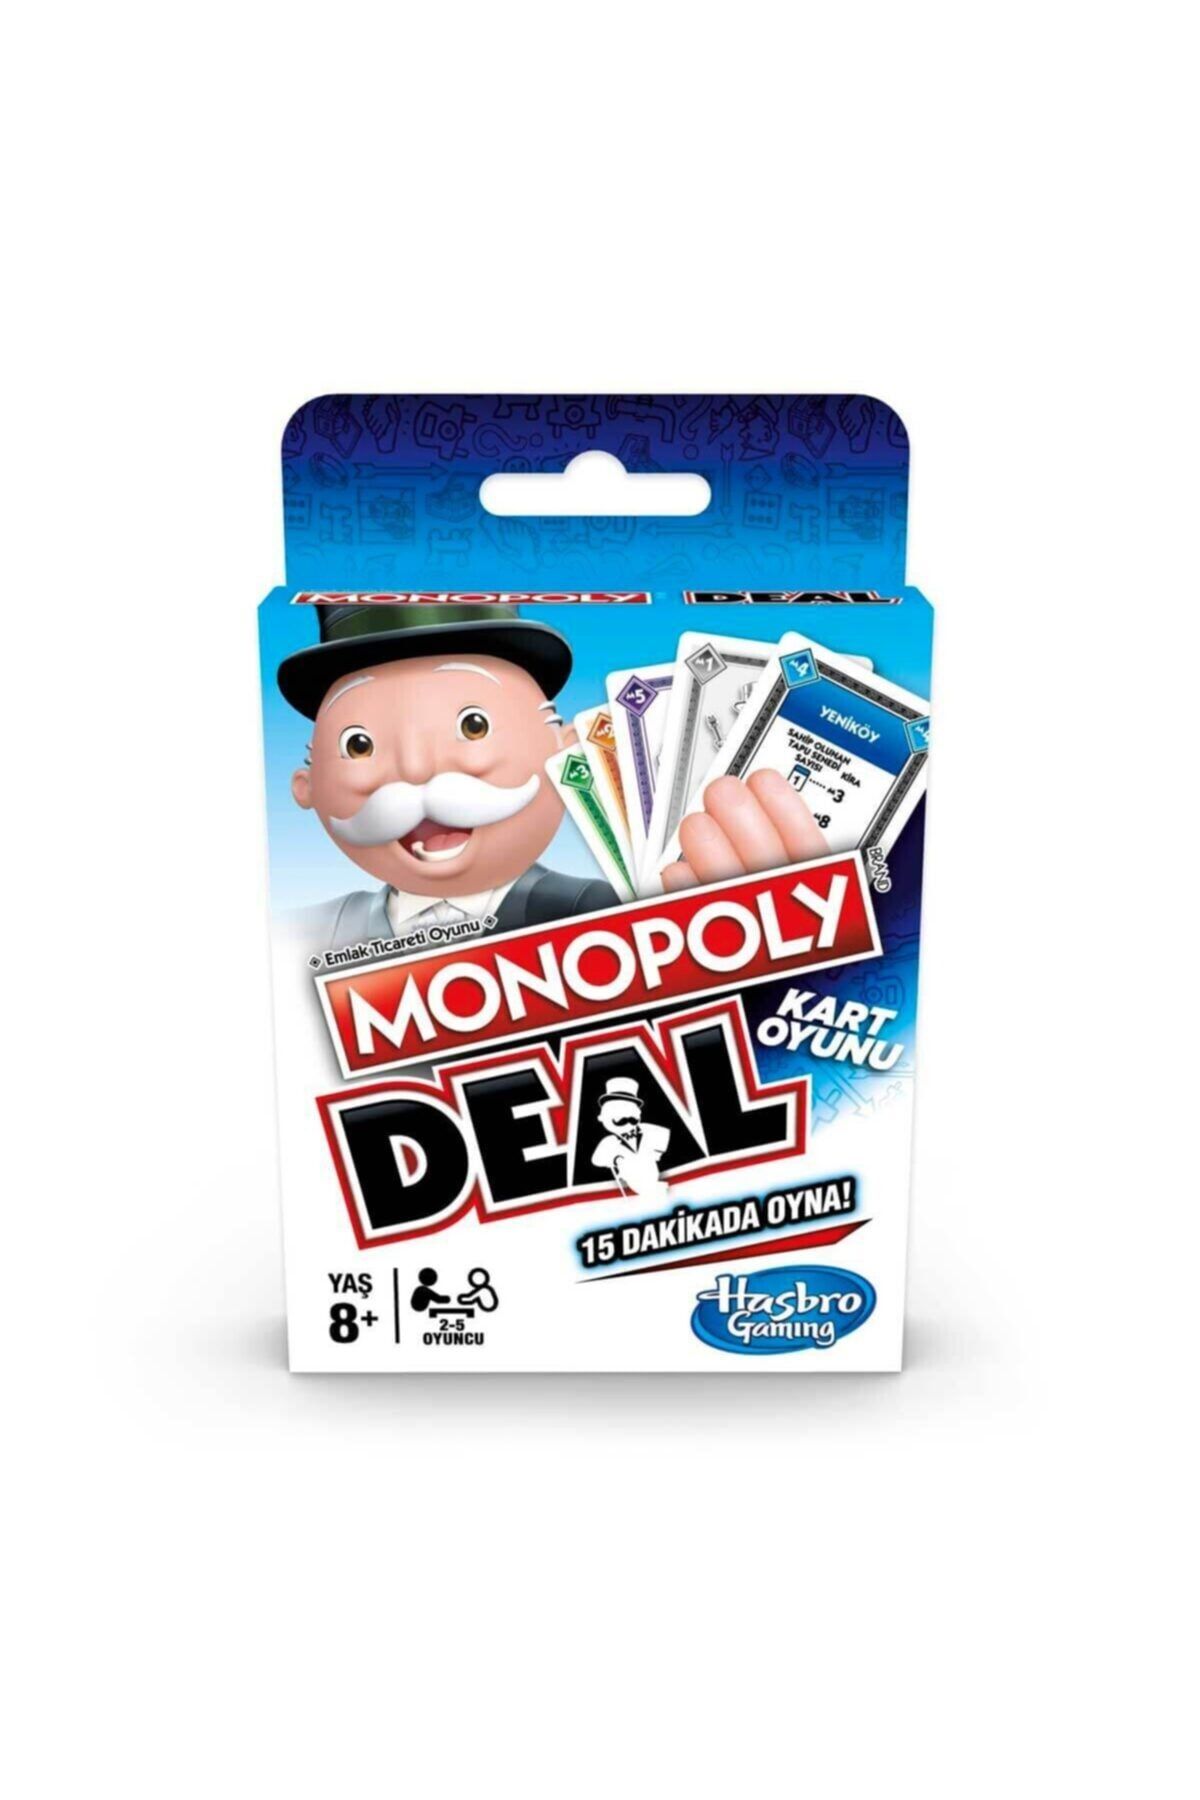 Monopoly Deal  Kart Oyunu